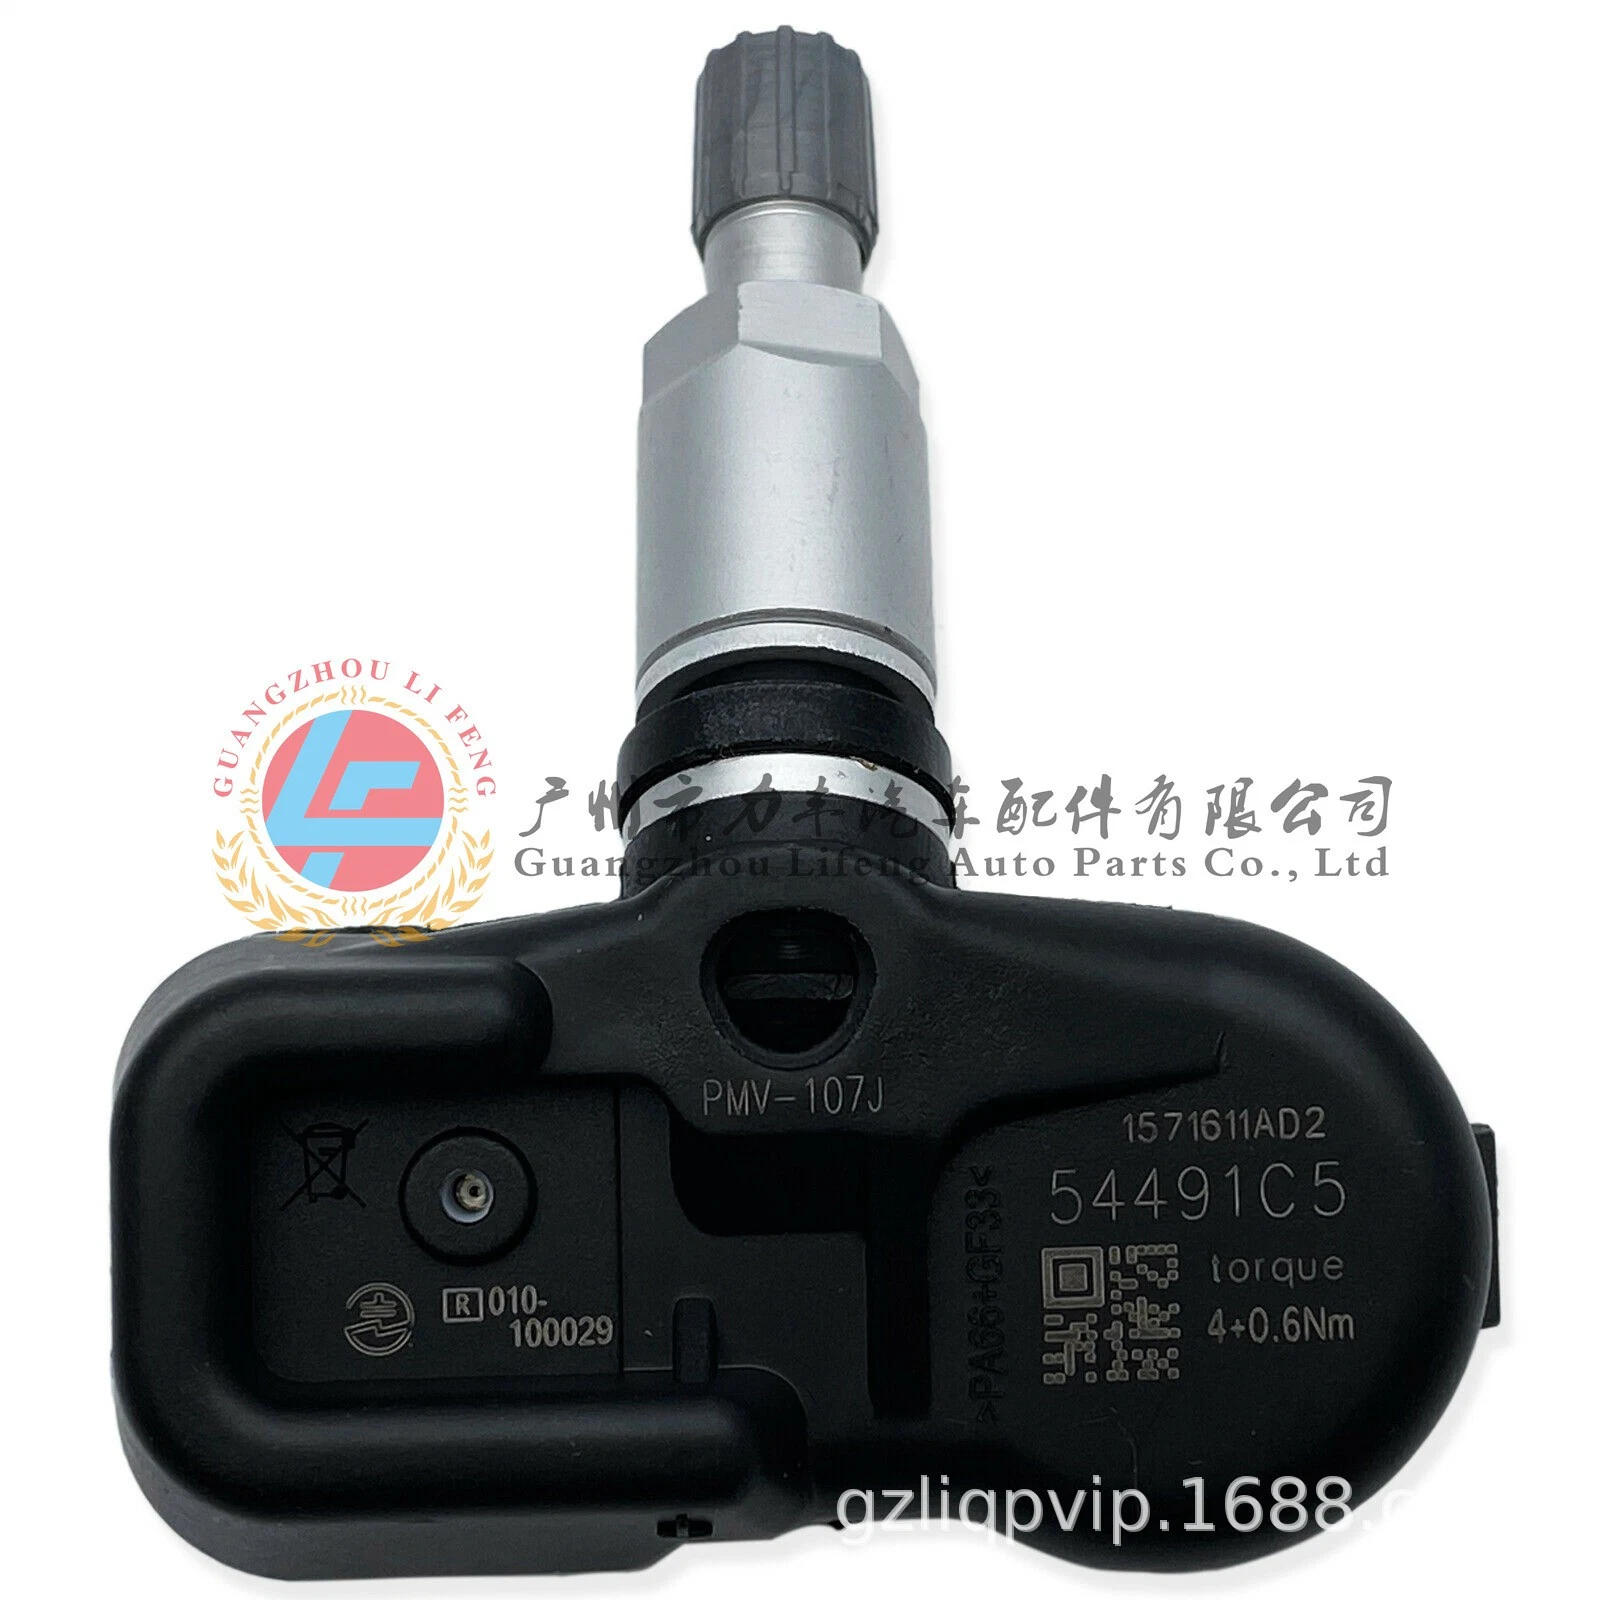 Sensor número de producto 42607-30040 PMV-C010 es adecuado para Camry Prado Y otros 4000 Monitoreo de presión de ruedas sensor de presión de neumáticos de automóvil